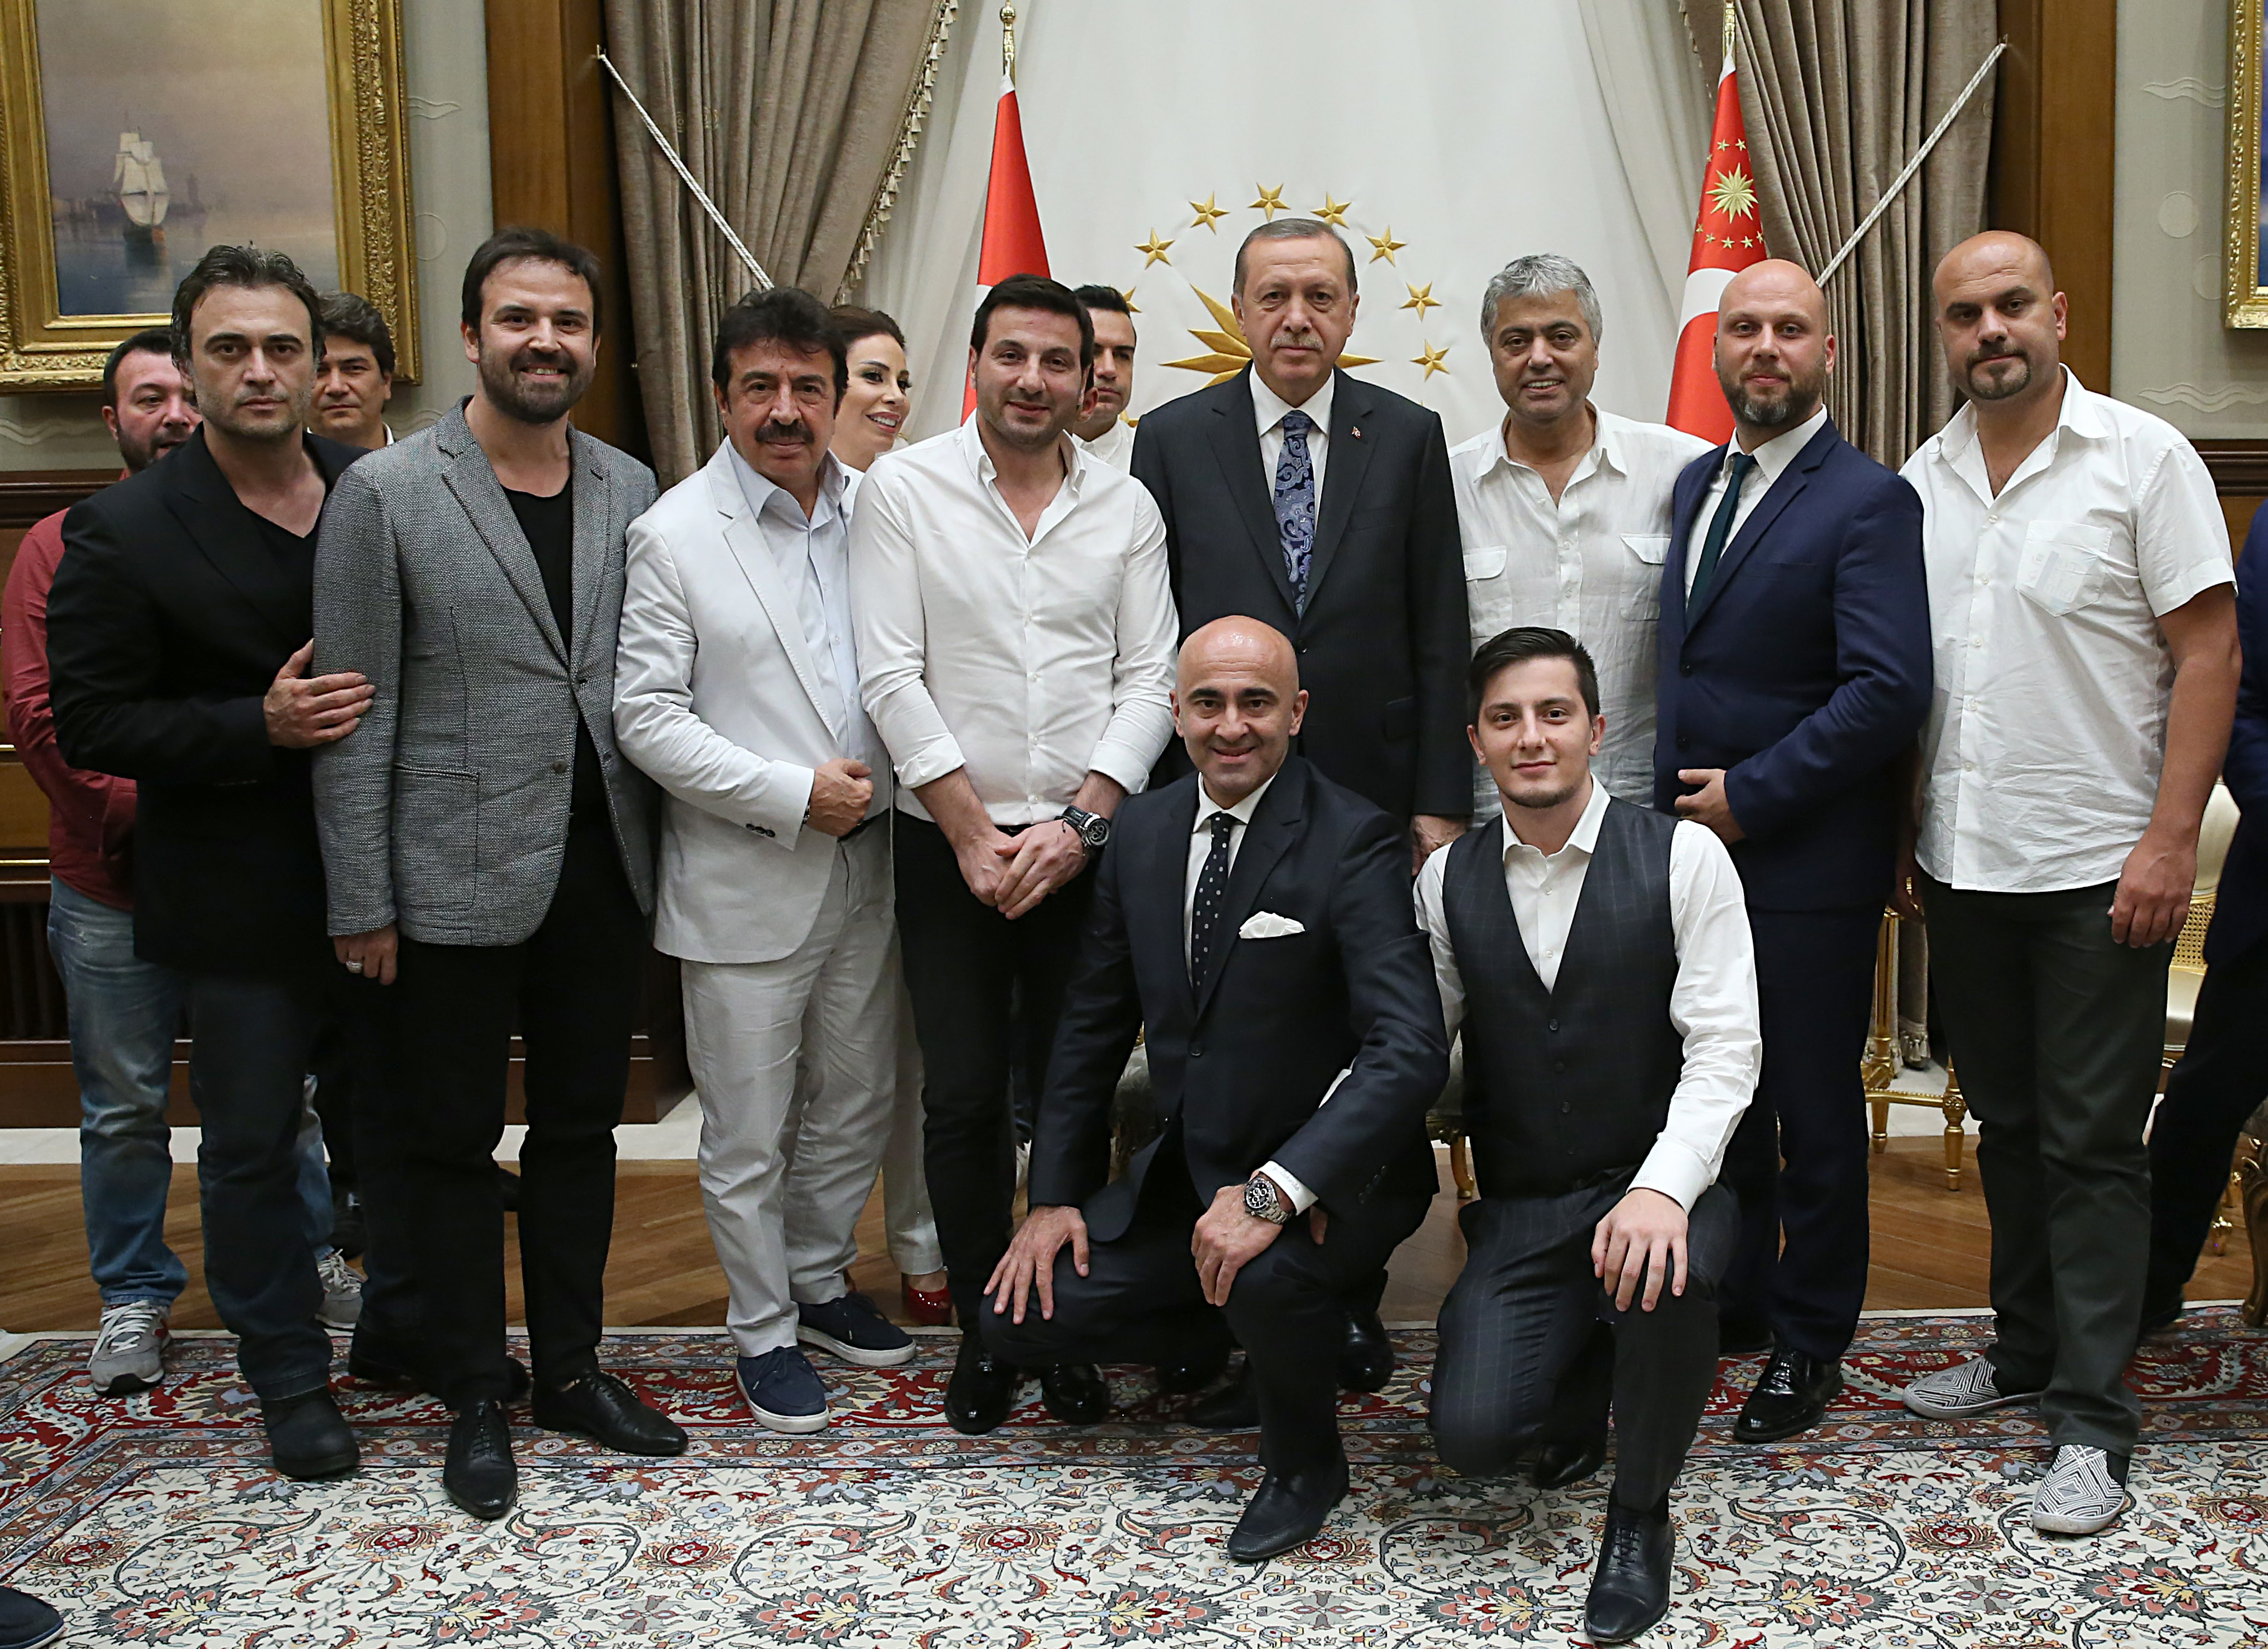 قام المشاهير بالتقاط صور تذكارية مع رئيس الجمهورية أردوغان.